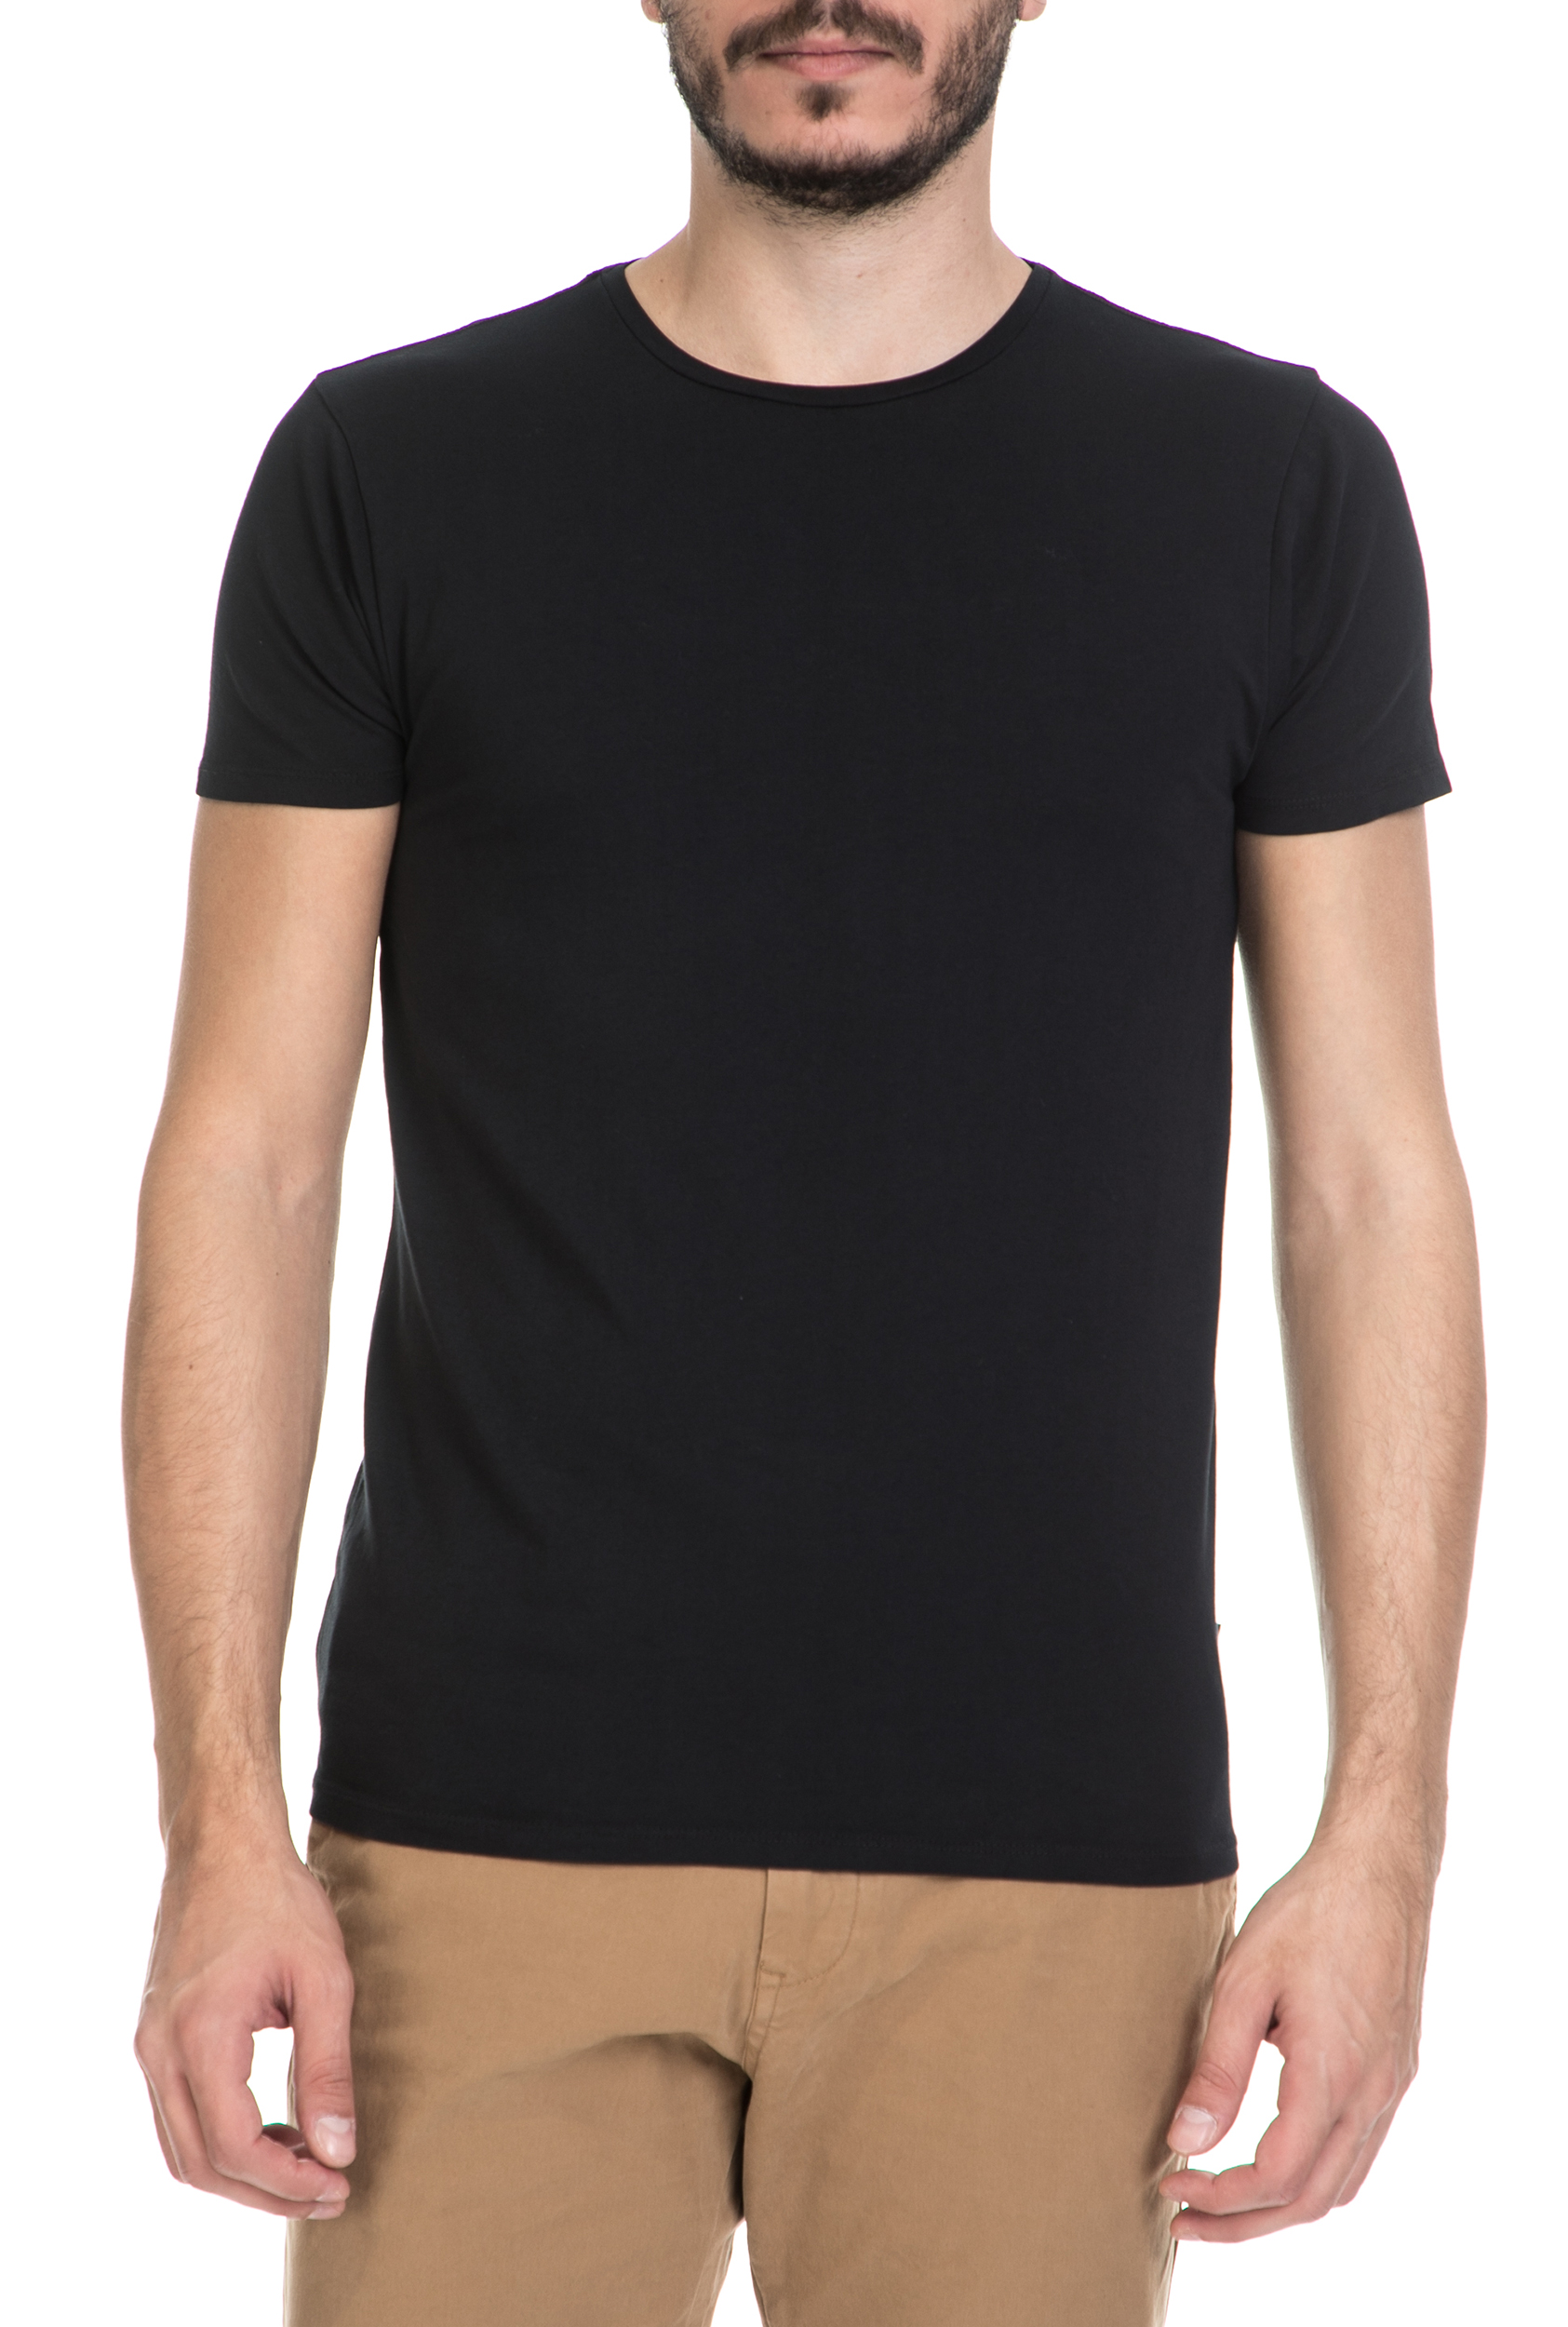 Ανδρικά/Ρούχα/Μπλούζες/Κοντομάνικες SCOTCH & SODA - Ανδρικό T-shirt NOS SCOTCH & SODA μαύρο